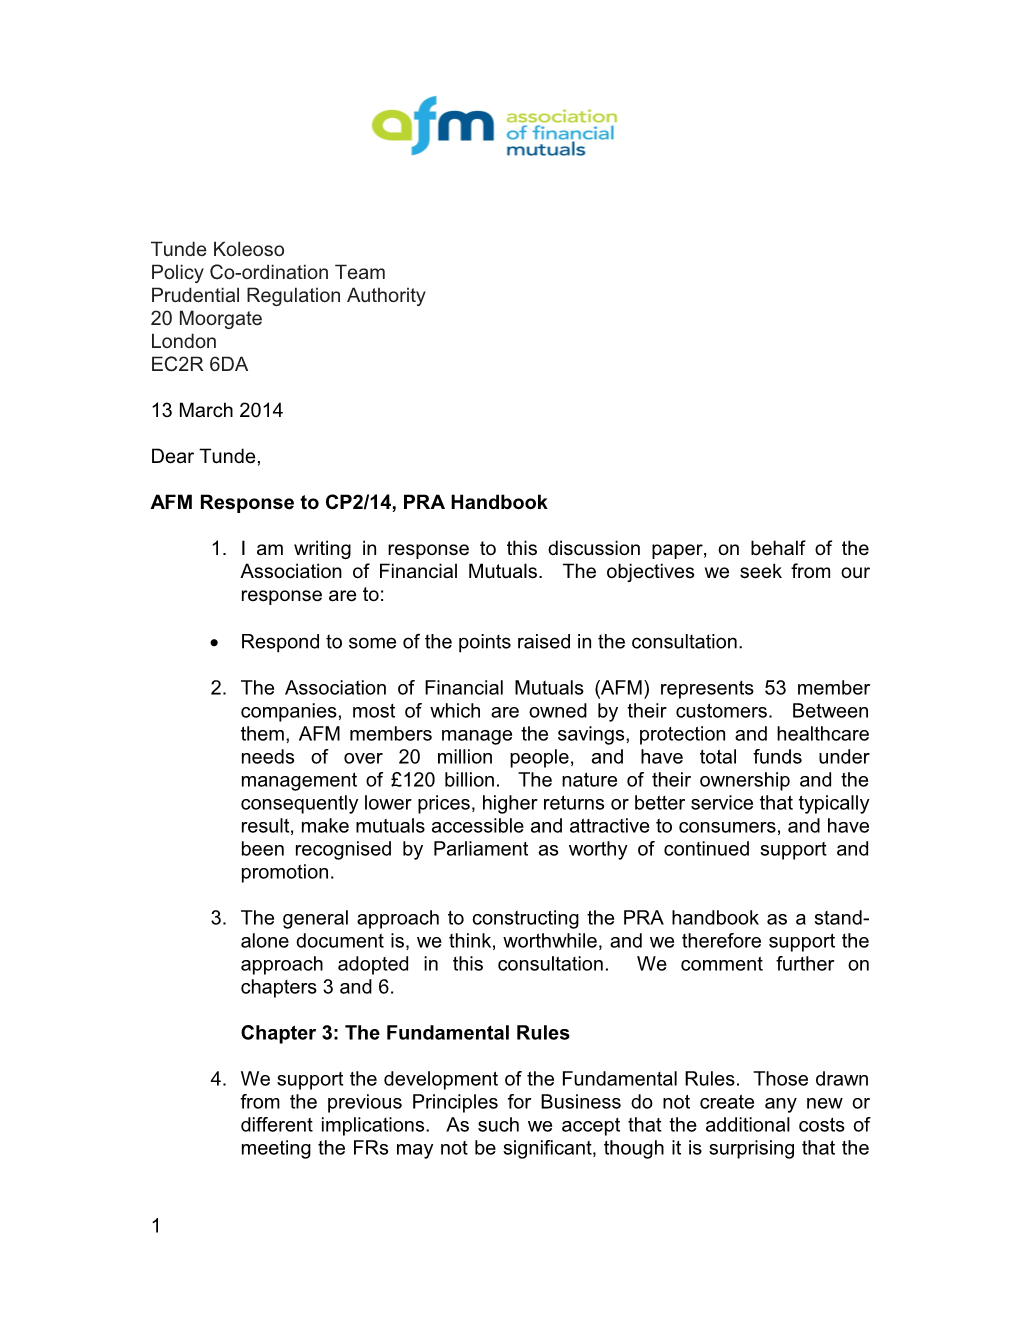 AFM Response to CP2/14,PRA Handbook